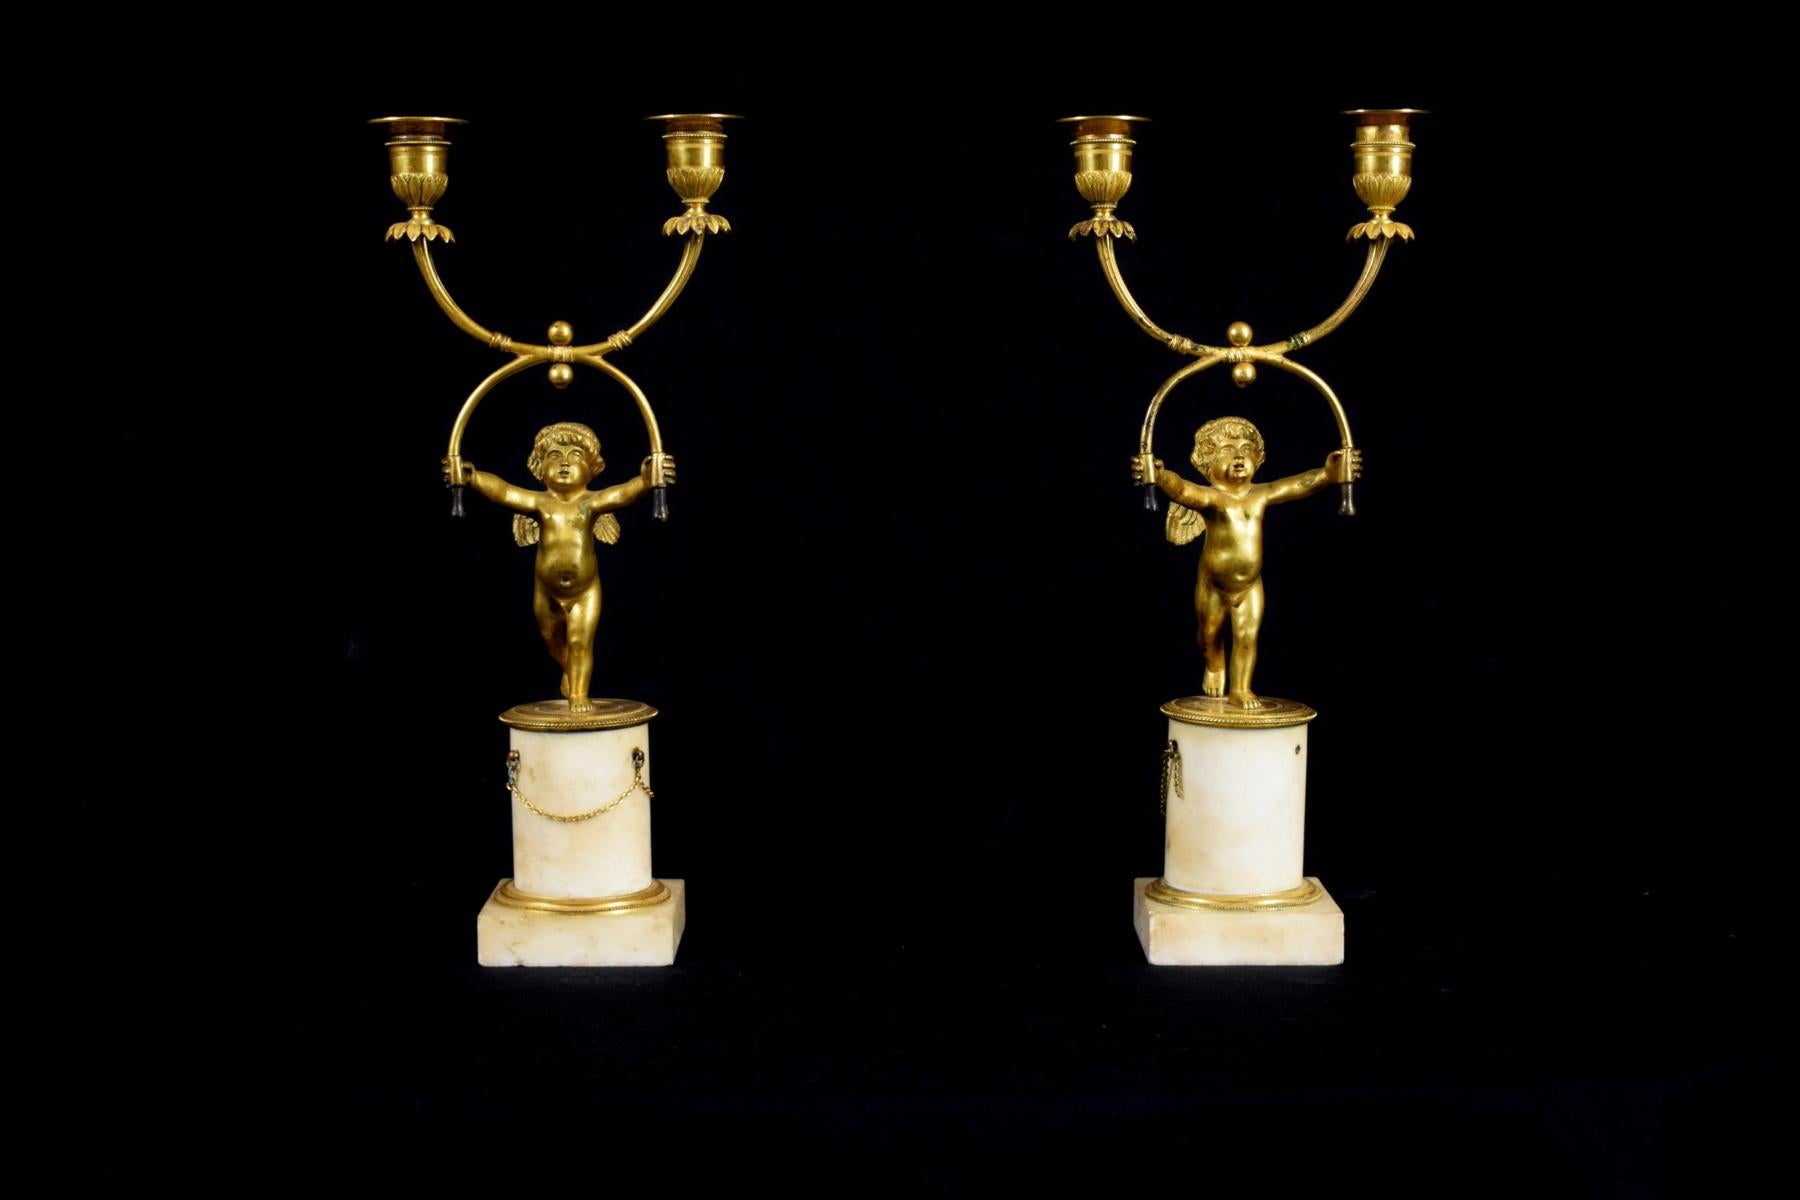 XVIIIe siècle, paire de chandeliers français en bronze doré à deux lumières

Mesures : H total 35 cm ; H base 10,5 cm x L 8,2 x 8,2 cm ; L putti 16 cm x D 10 cm

Cette splendide paire de chandeliers a été fabriquée en France au XVIIIe siècle en